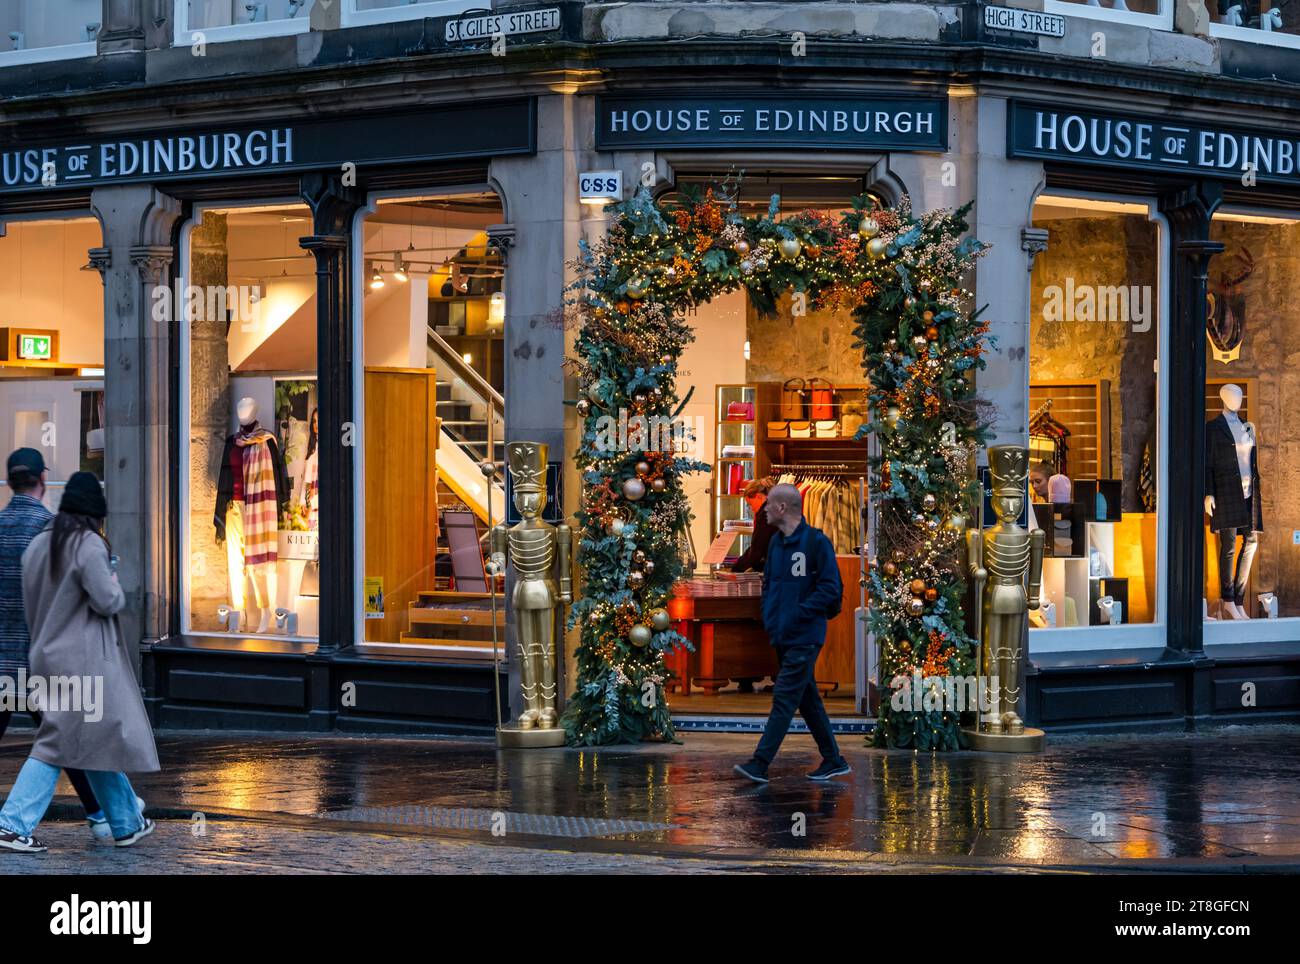 Edimburgo, Scozia, Regno Unito, 20 novembre 2023. Le luci delle decorazioni natalizie su un negozio turistico nel Royal Mile sono un'attrazione alla luce del tramonto mentre la gente passa davanti. Crediti: Sally Anderson/Alamy Live News Foto Stock